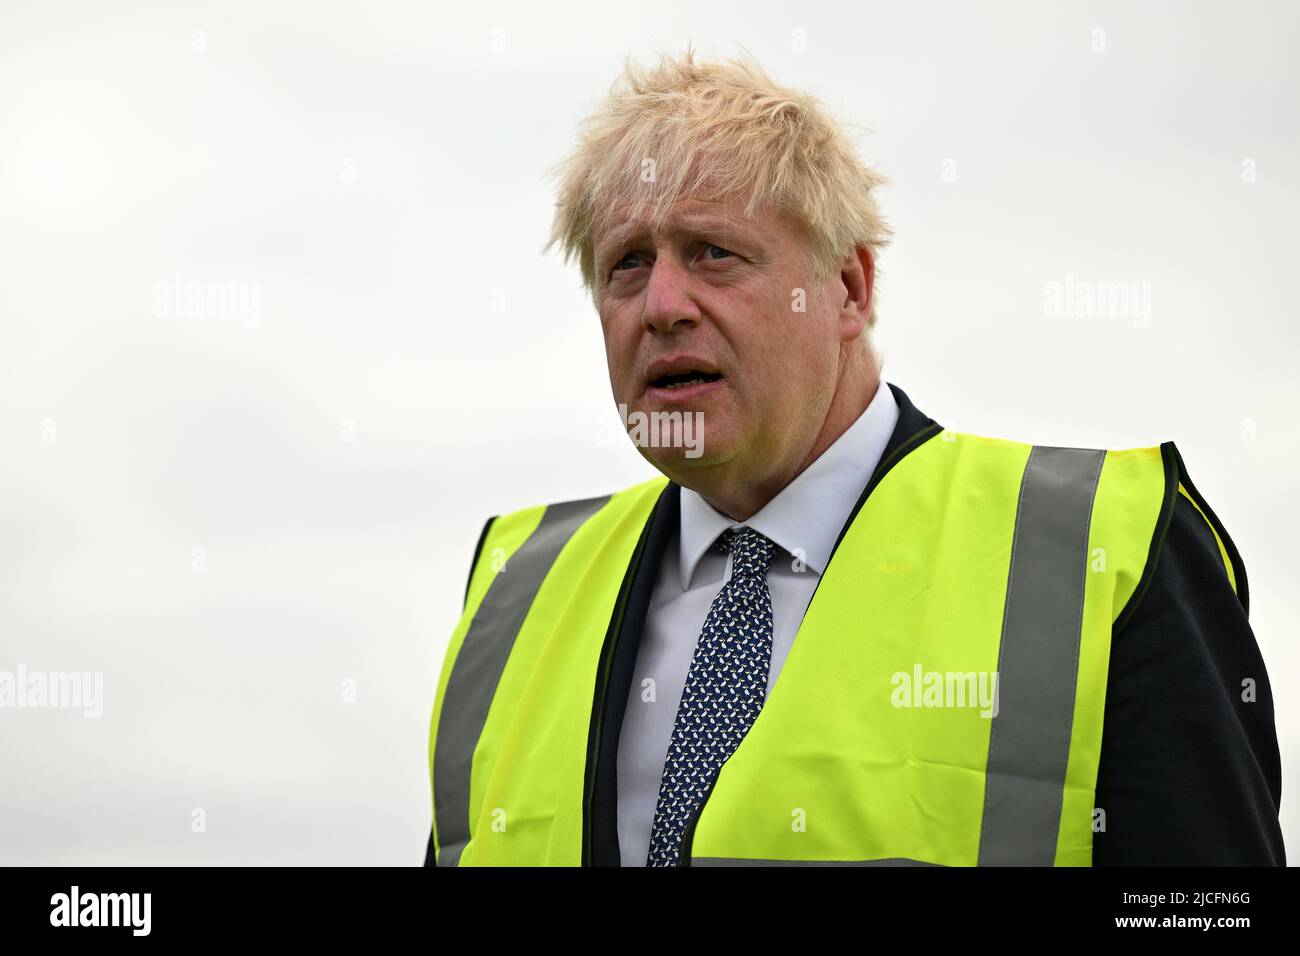 Premierminister Boris Johnson während eines Besuchs bei Southern England Farms Ltd in Hayle, Cornwall, vor der Veröffentlichung des Weißbuches der britischen Regierung zur Lebensmittelstrategie, Cornwall. Bilddatum: Montag, 13. Juni 2022. Stockfoto